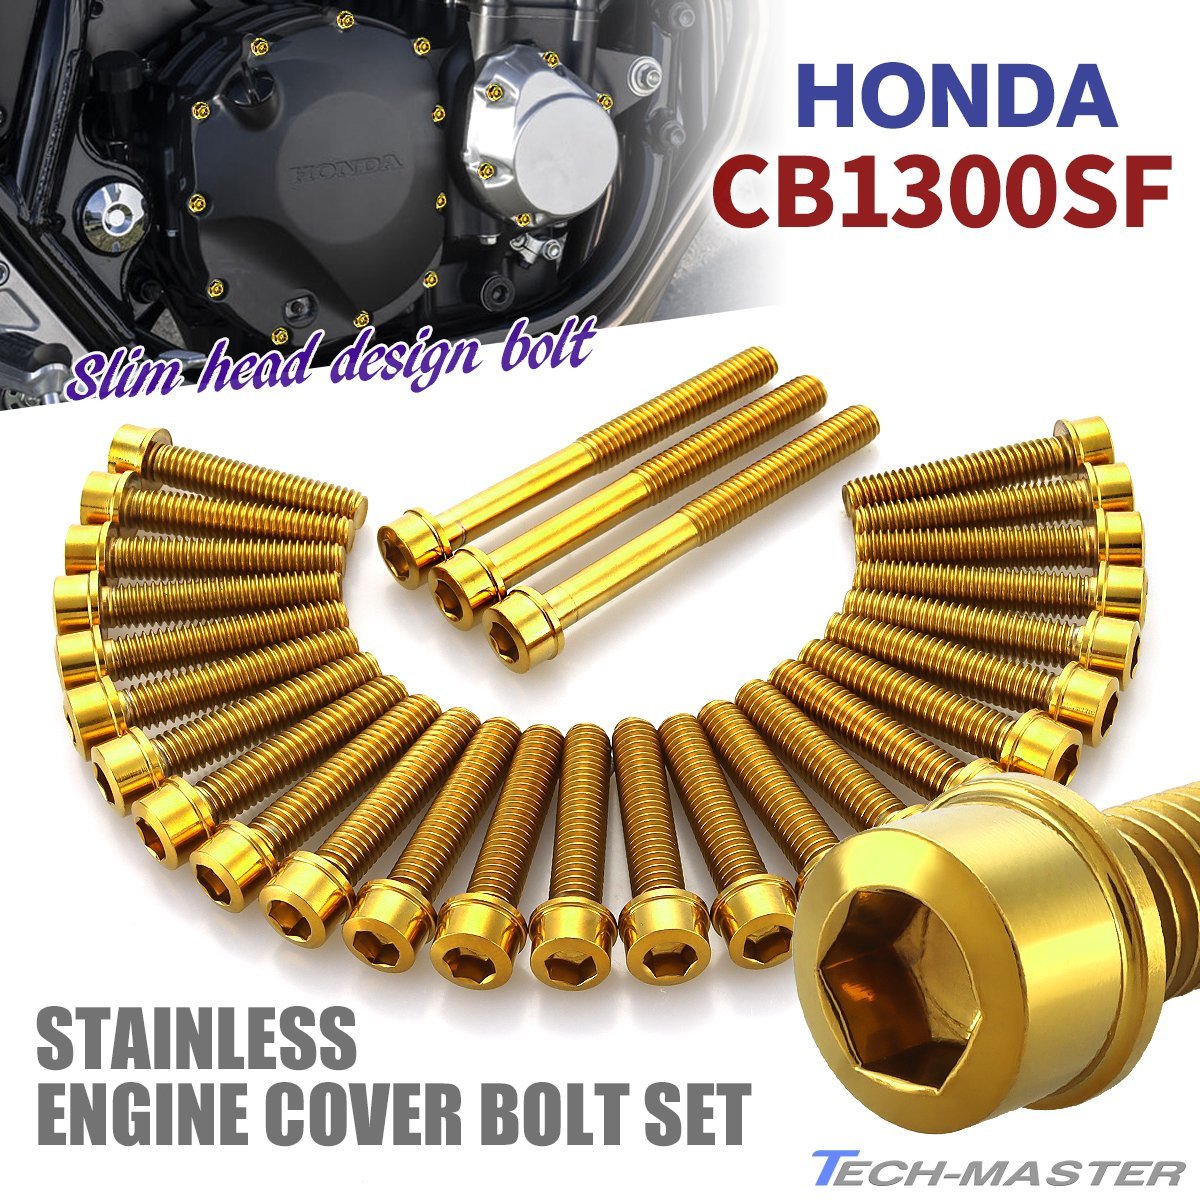 CB1300SF エンジンカバーボルト 28本セット ステンレス製 スリムヘッド ホンダ車用 ゴールドカラー TB6292の画像1